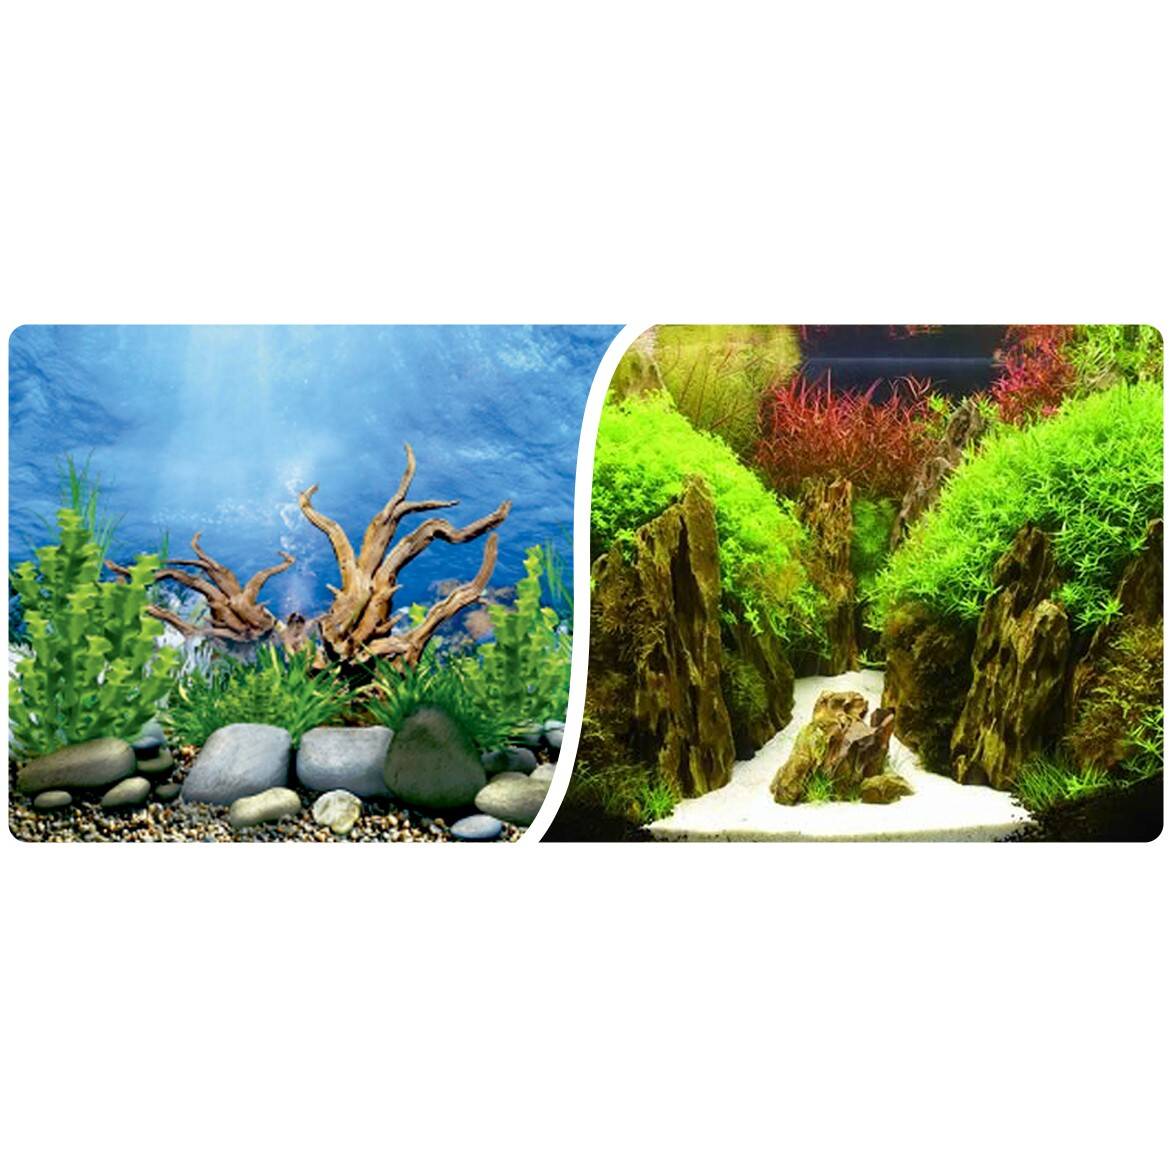 Aquarium background roll 60 cm